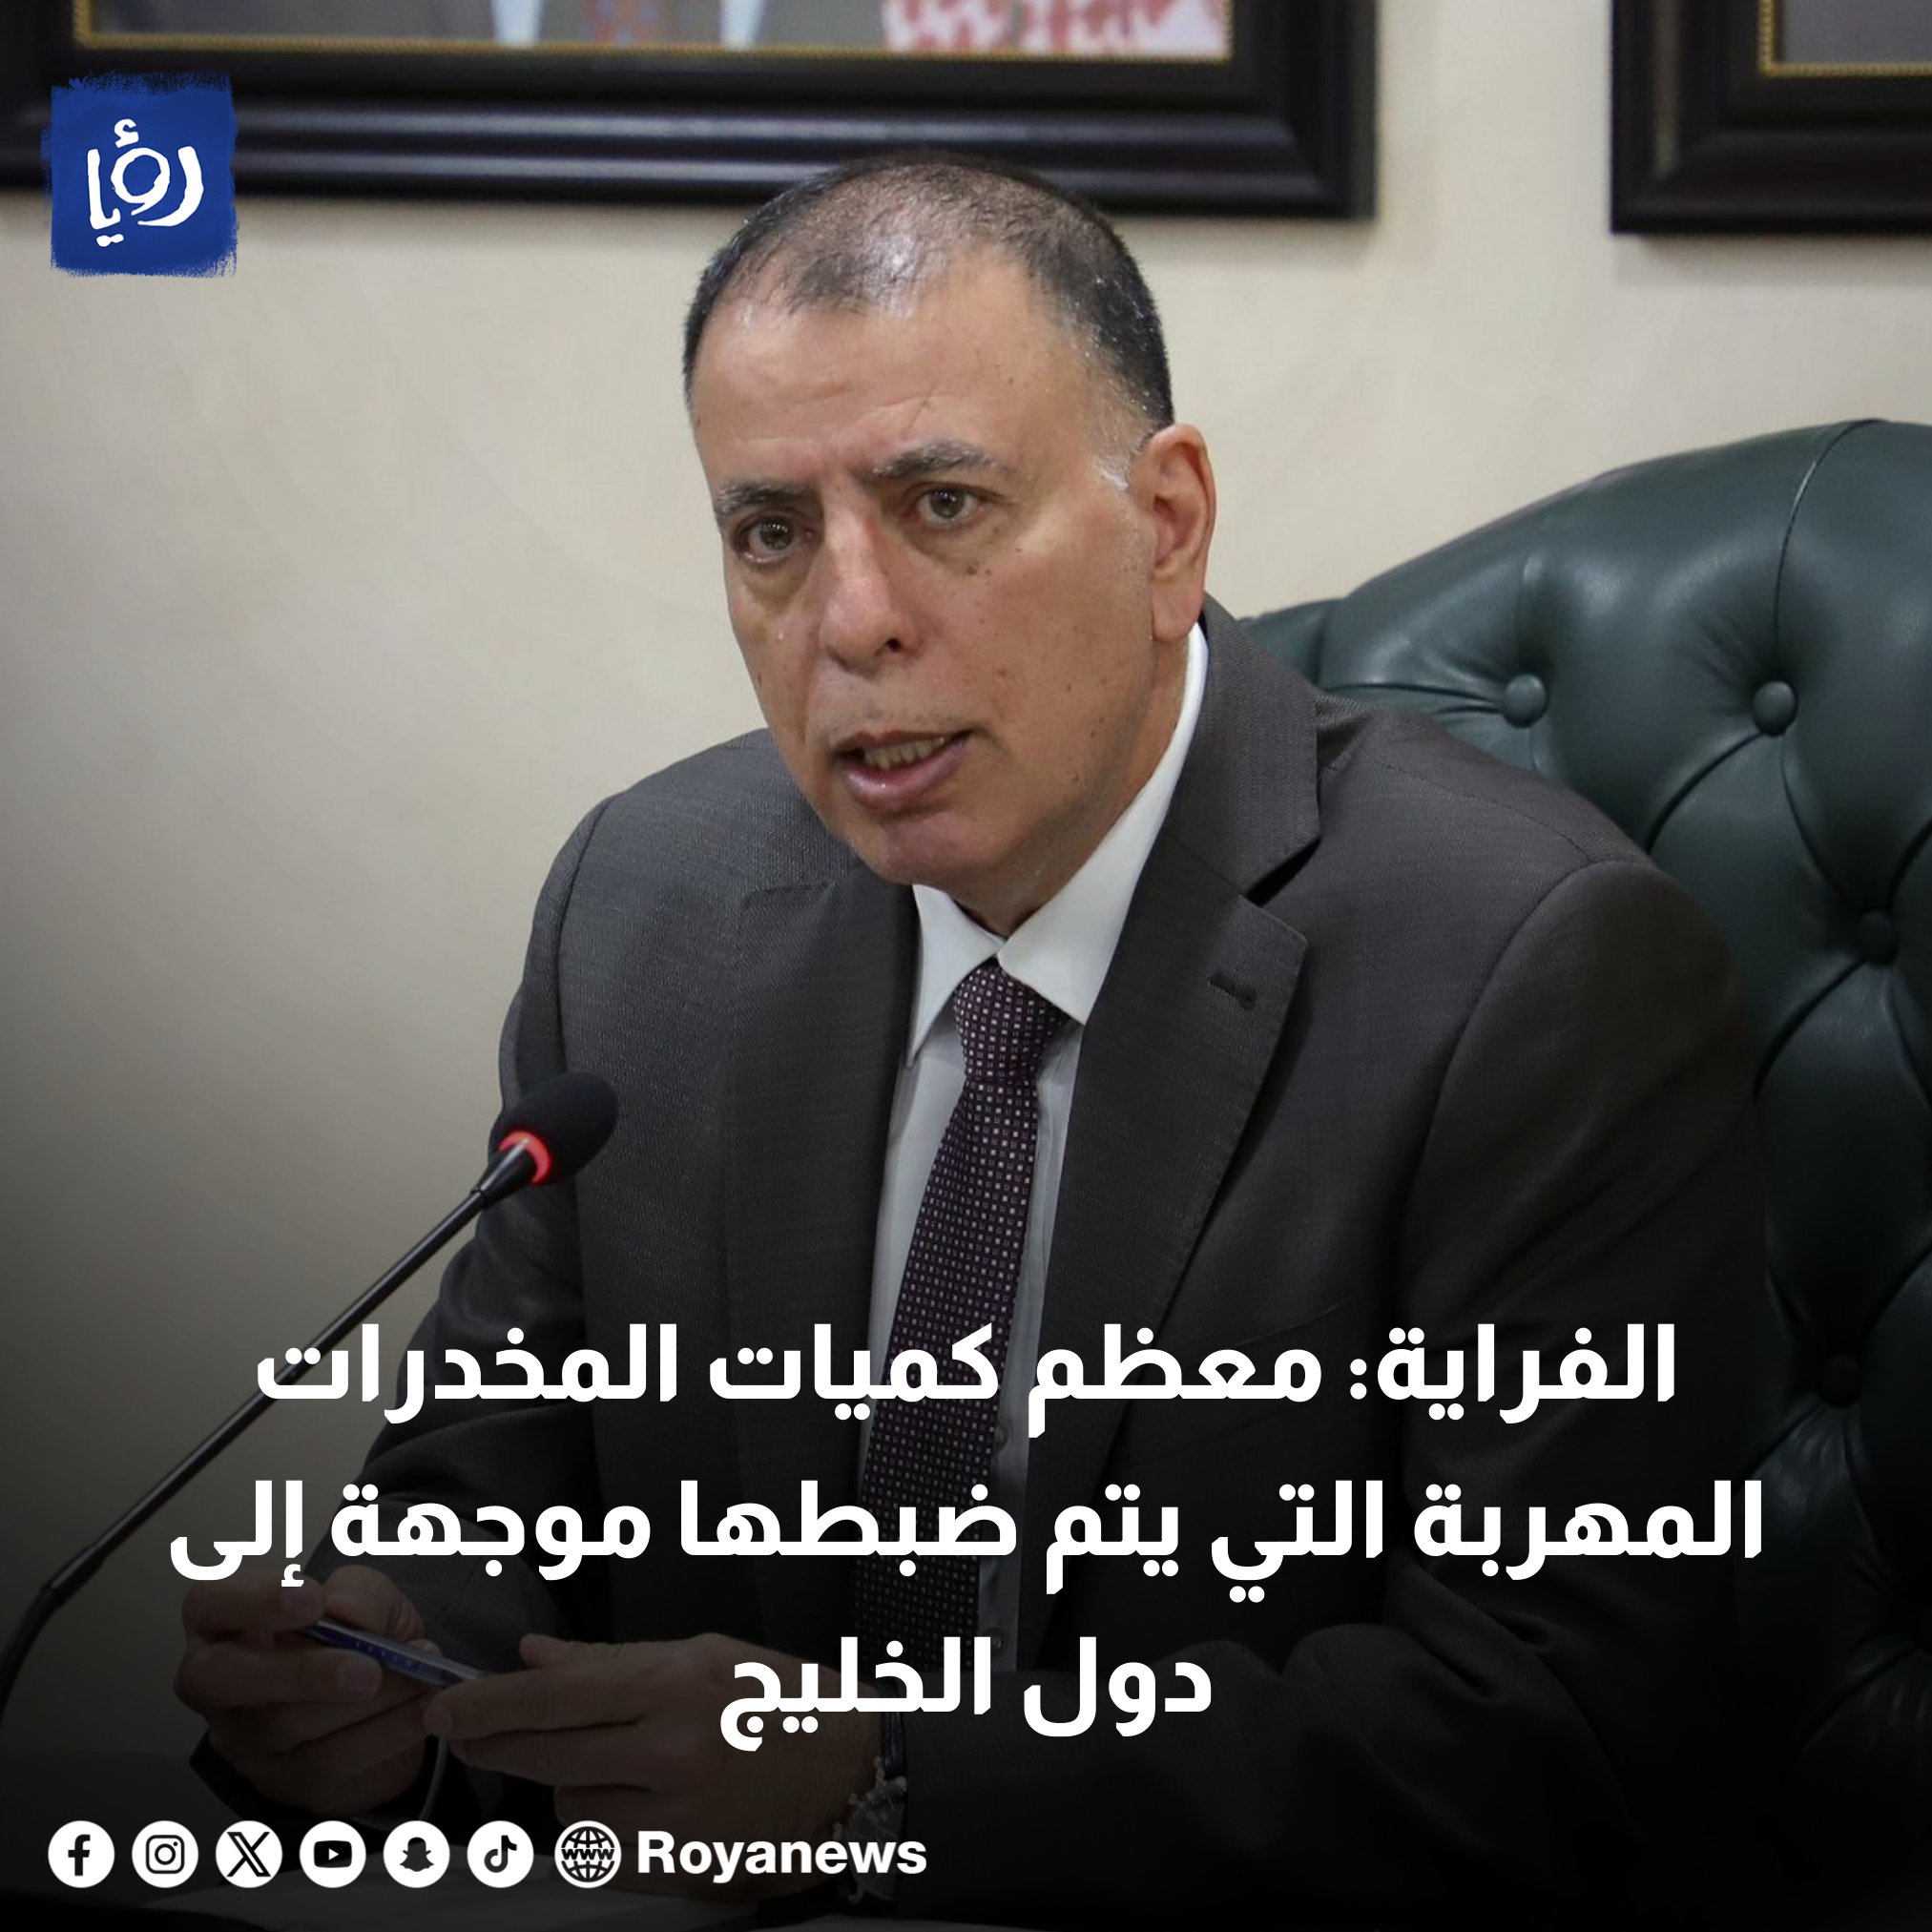 وزير الداخلية مازن الفراية: معظم كميات المخدرات المهربة التي يتم ضبطها موجهة إلى دول الخليج #رؤيا_الإخباري 